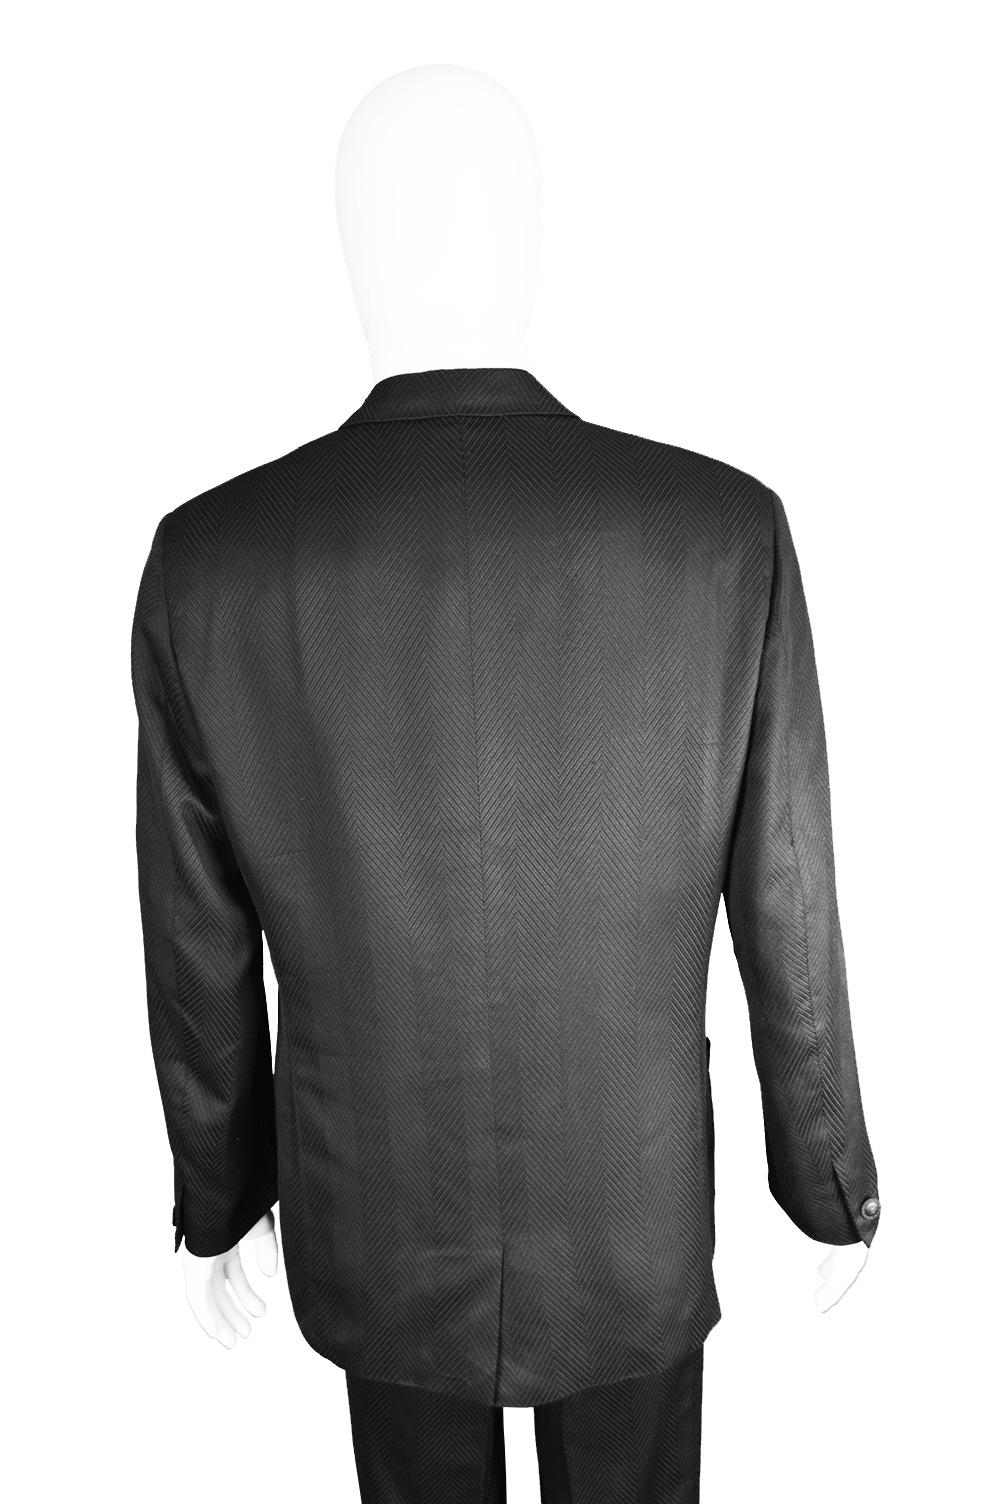 Gianni Versace Men's Black 100% Silk Jacquard 2 Piece Vintage Suit, 1990s For Sale 2